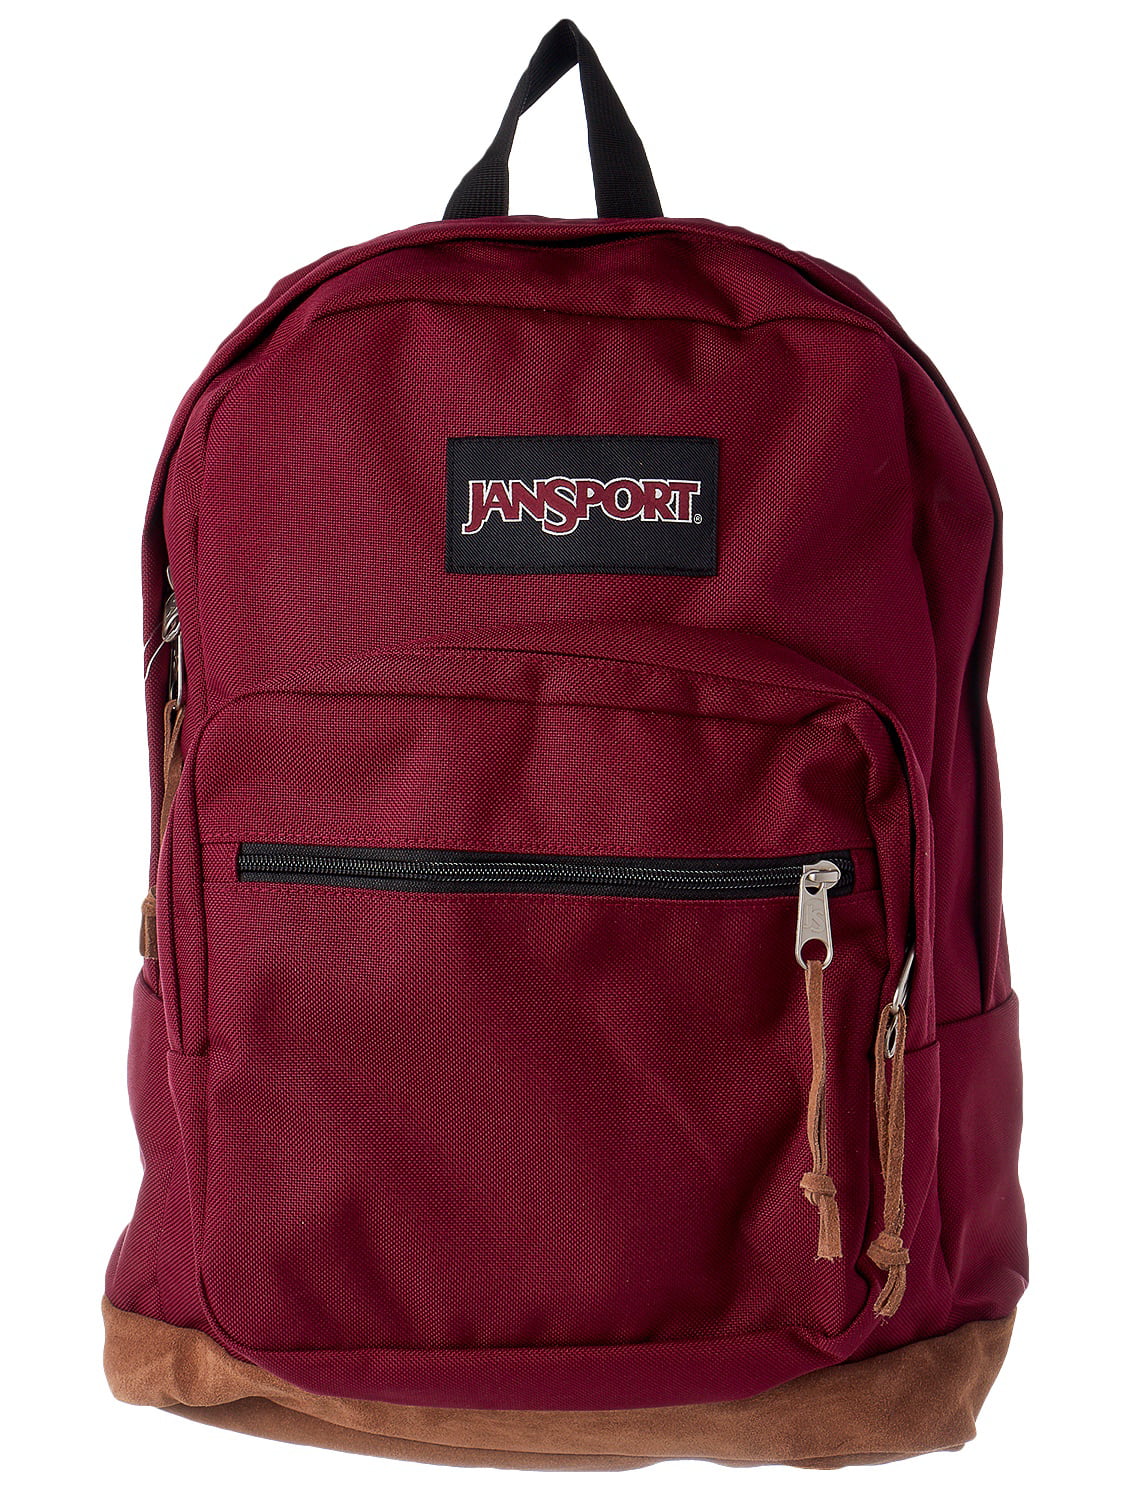 JanSport - Jansport Men's Right Pack Polyester Backpack - Russet Red ...